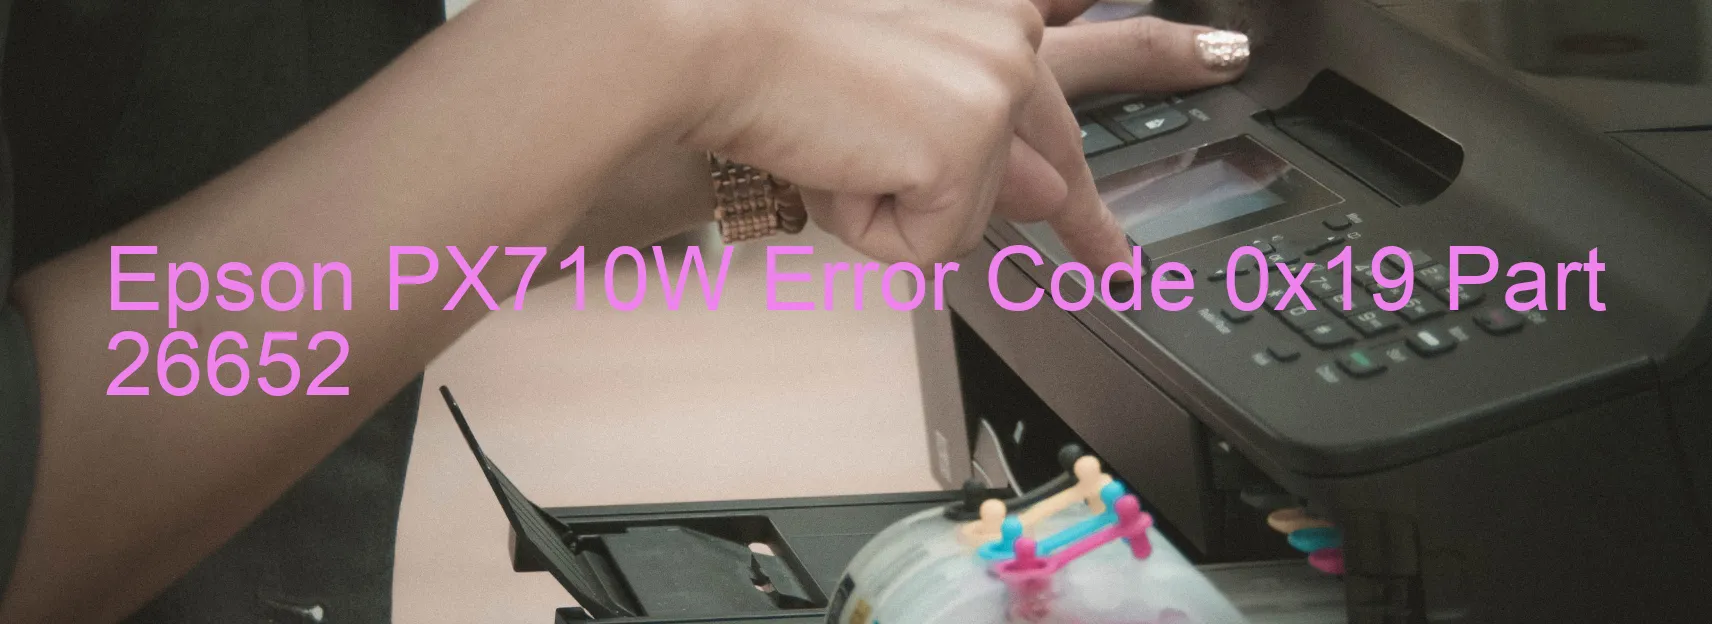 Epson PX710W Error Code 0x19 Part 26652